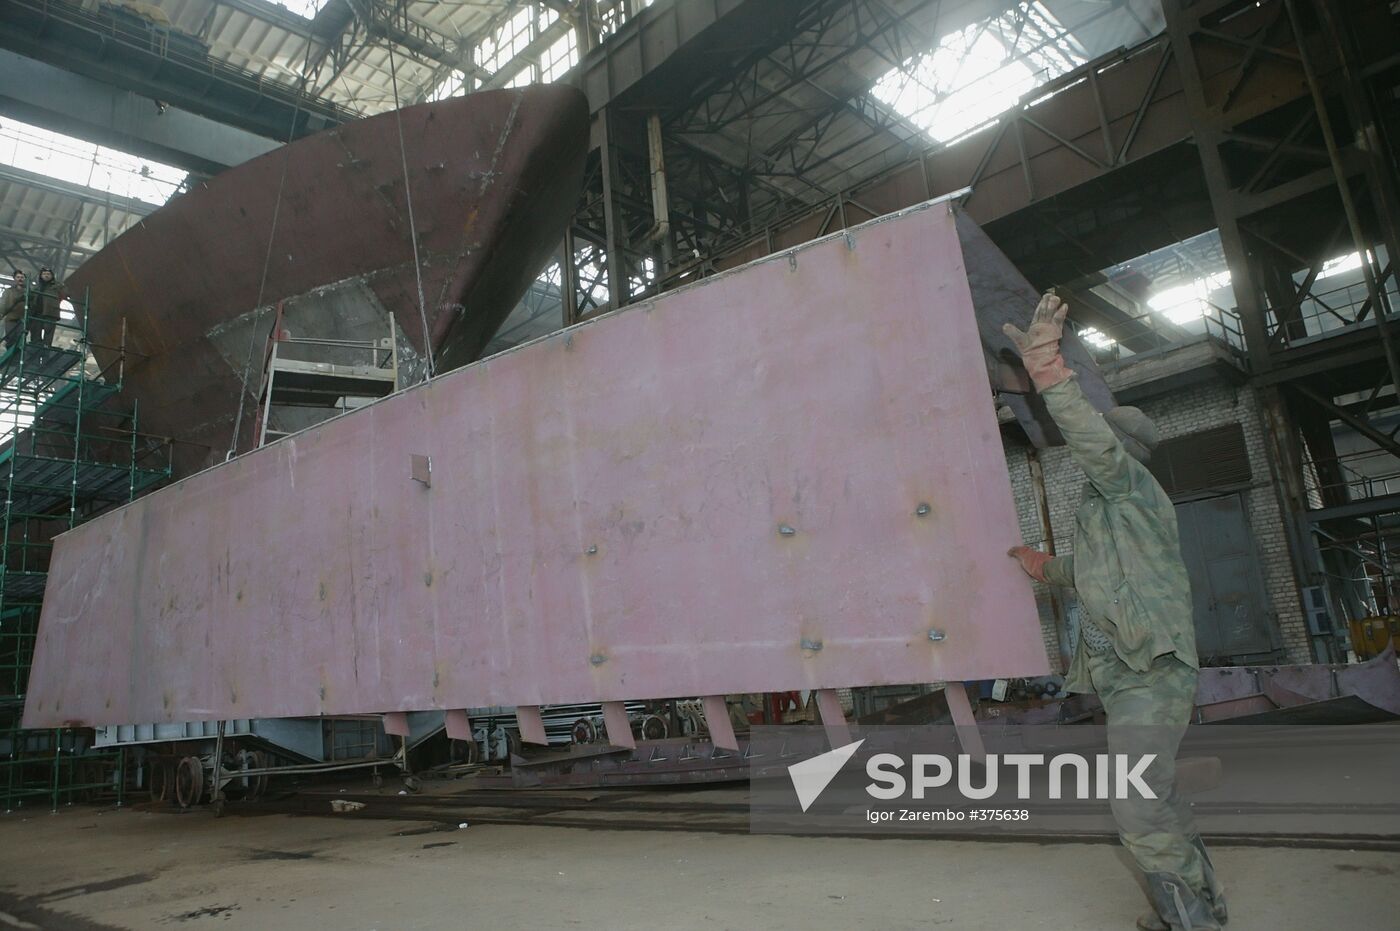 Shipyard "Yantar"